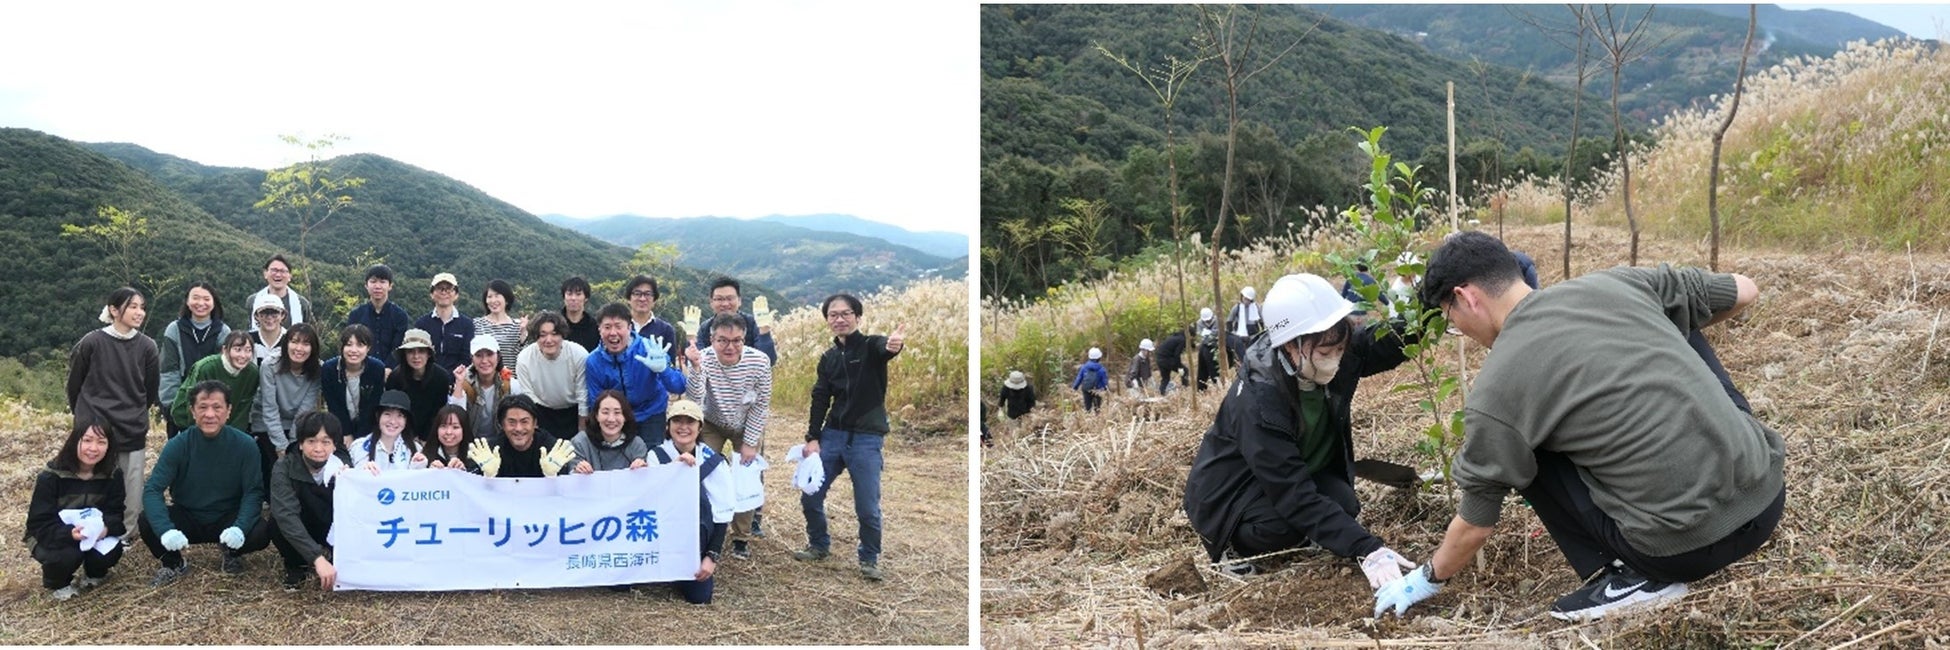 長崎県西海市の「チューリッヒの森」で社員によるボランティア活動を実施